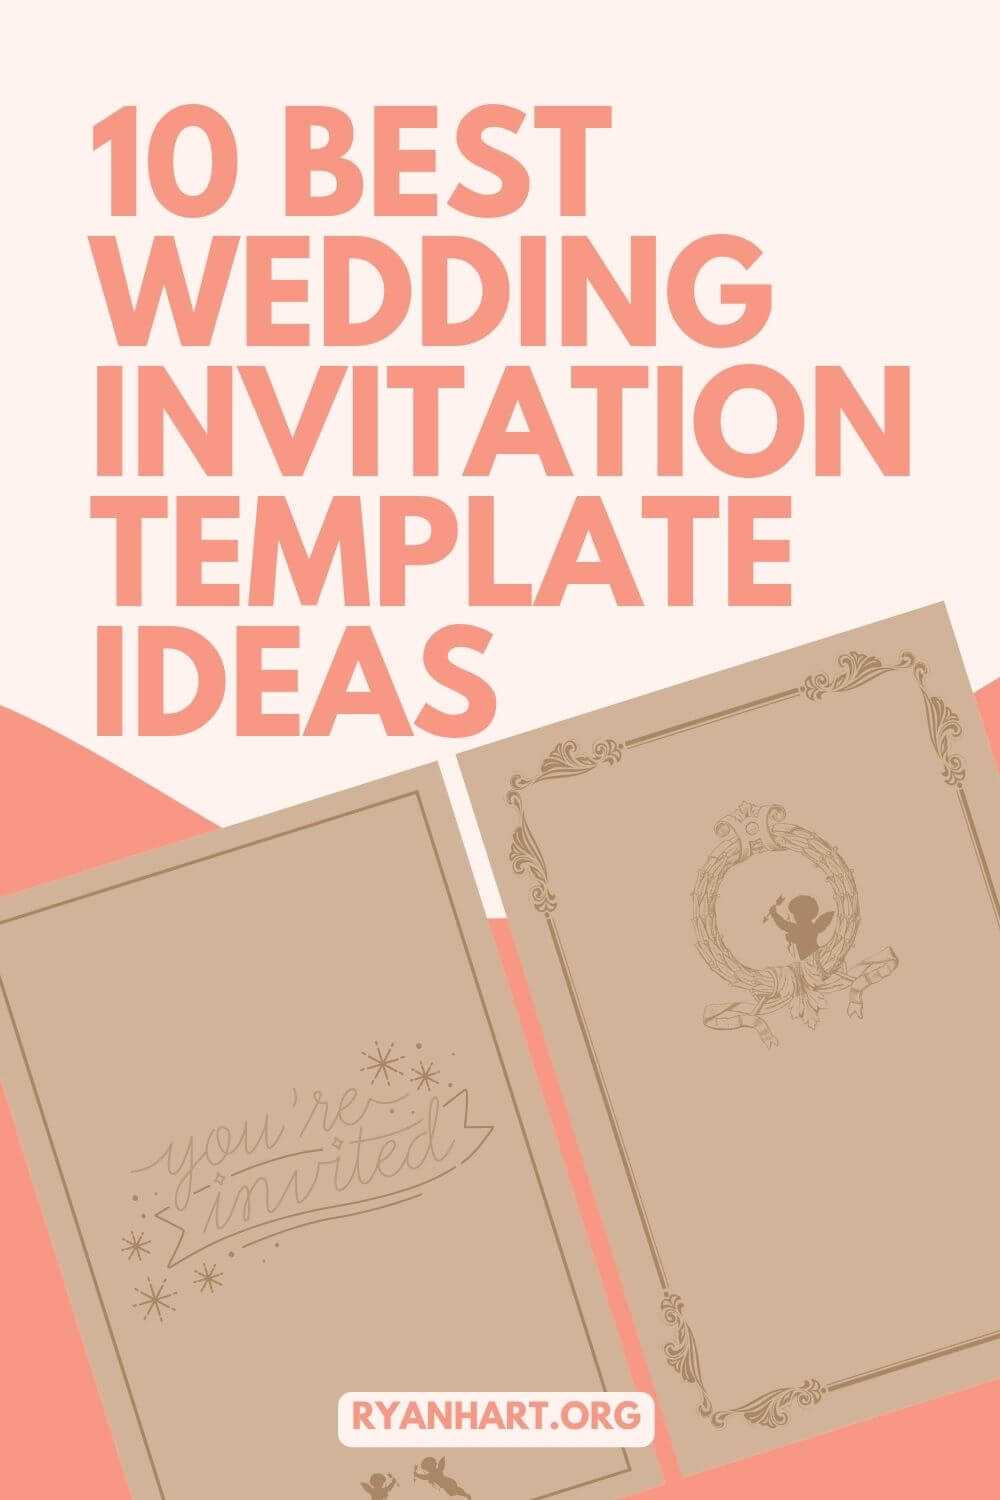 Cute wedding invitation